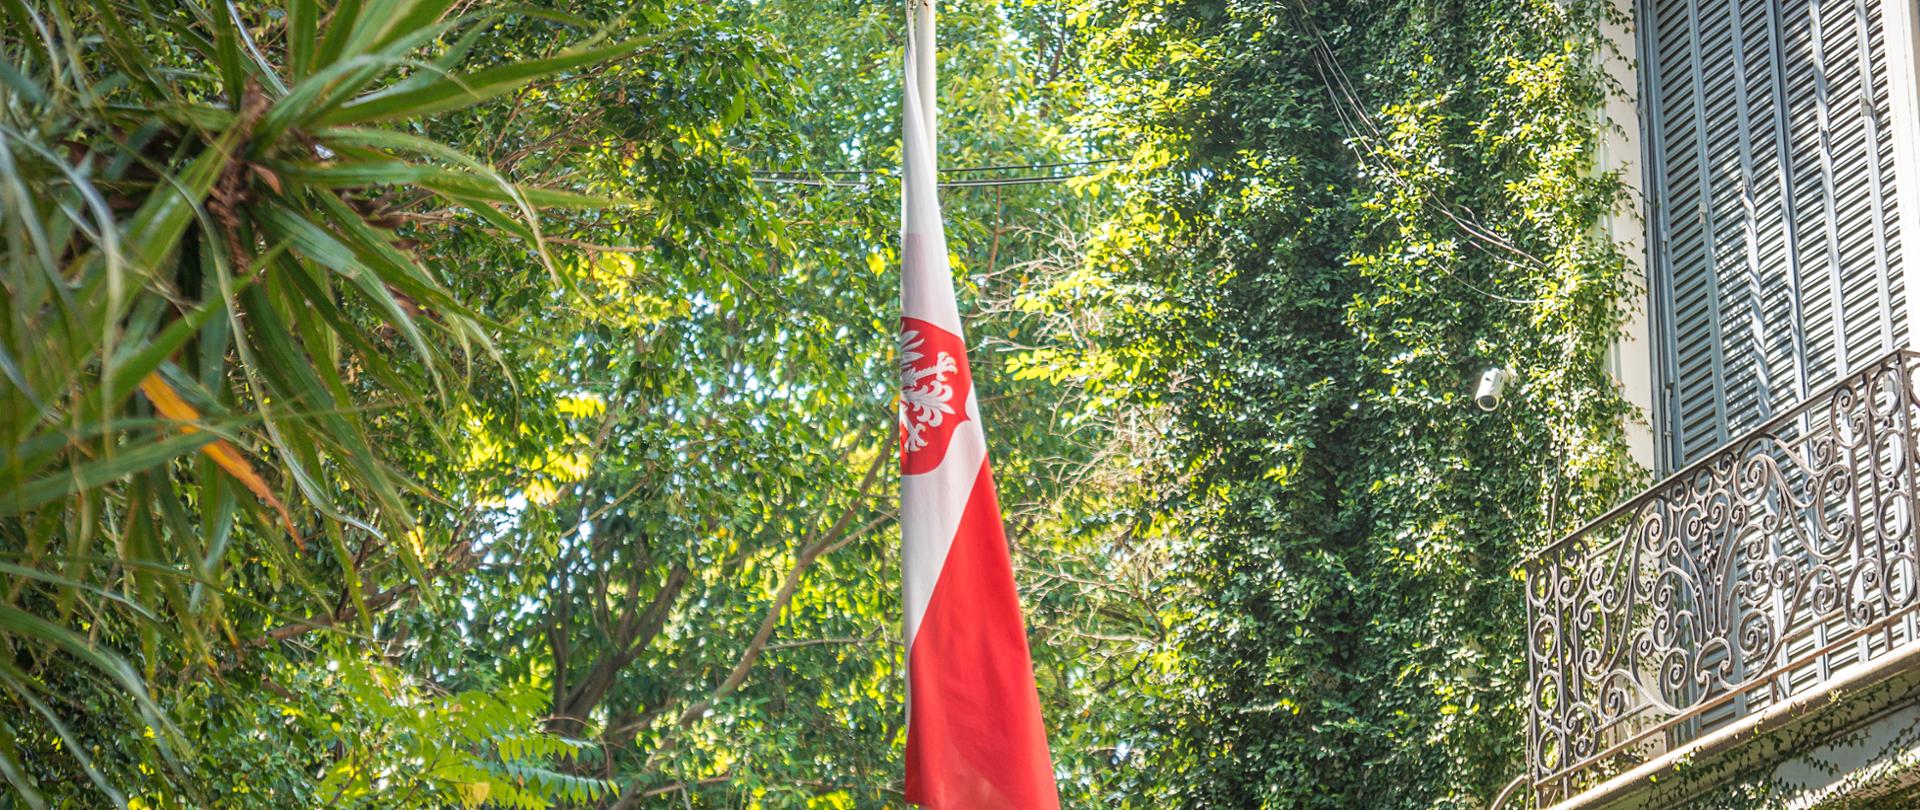 Bandera de Polonia en el jardin